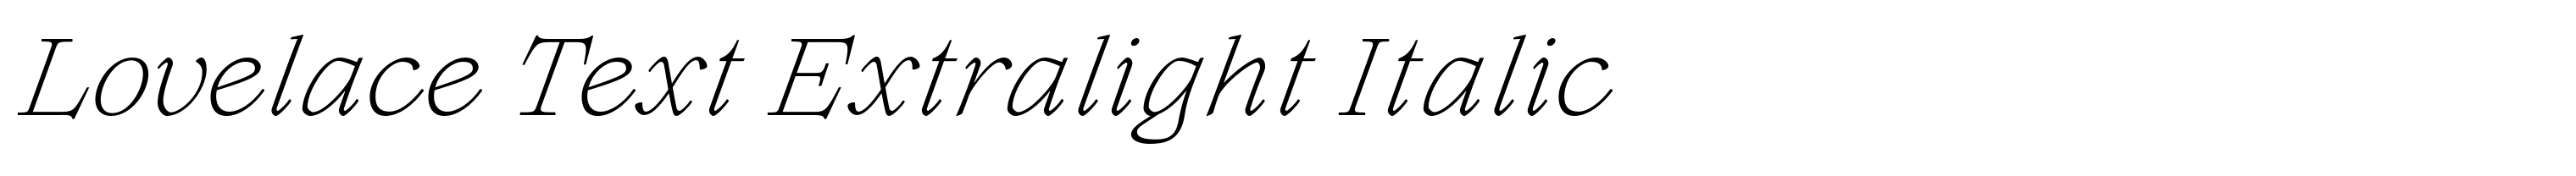 Lovelace Text Extralight Italic